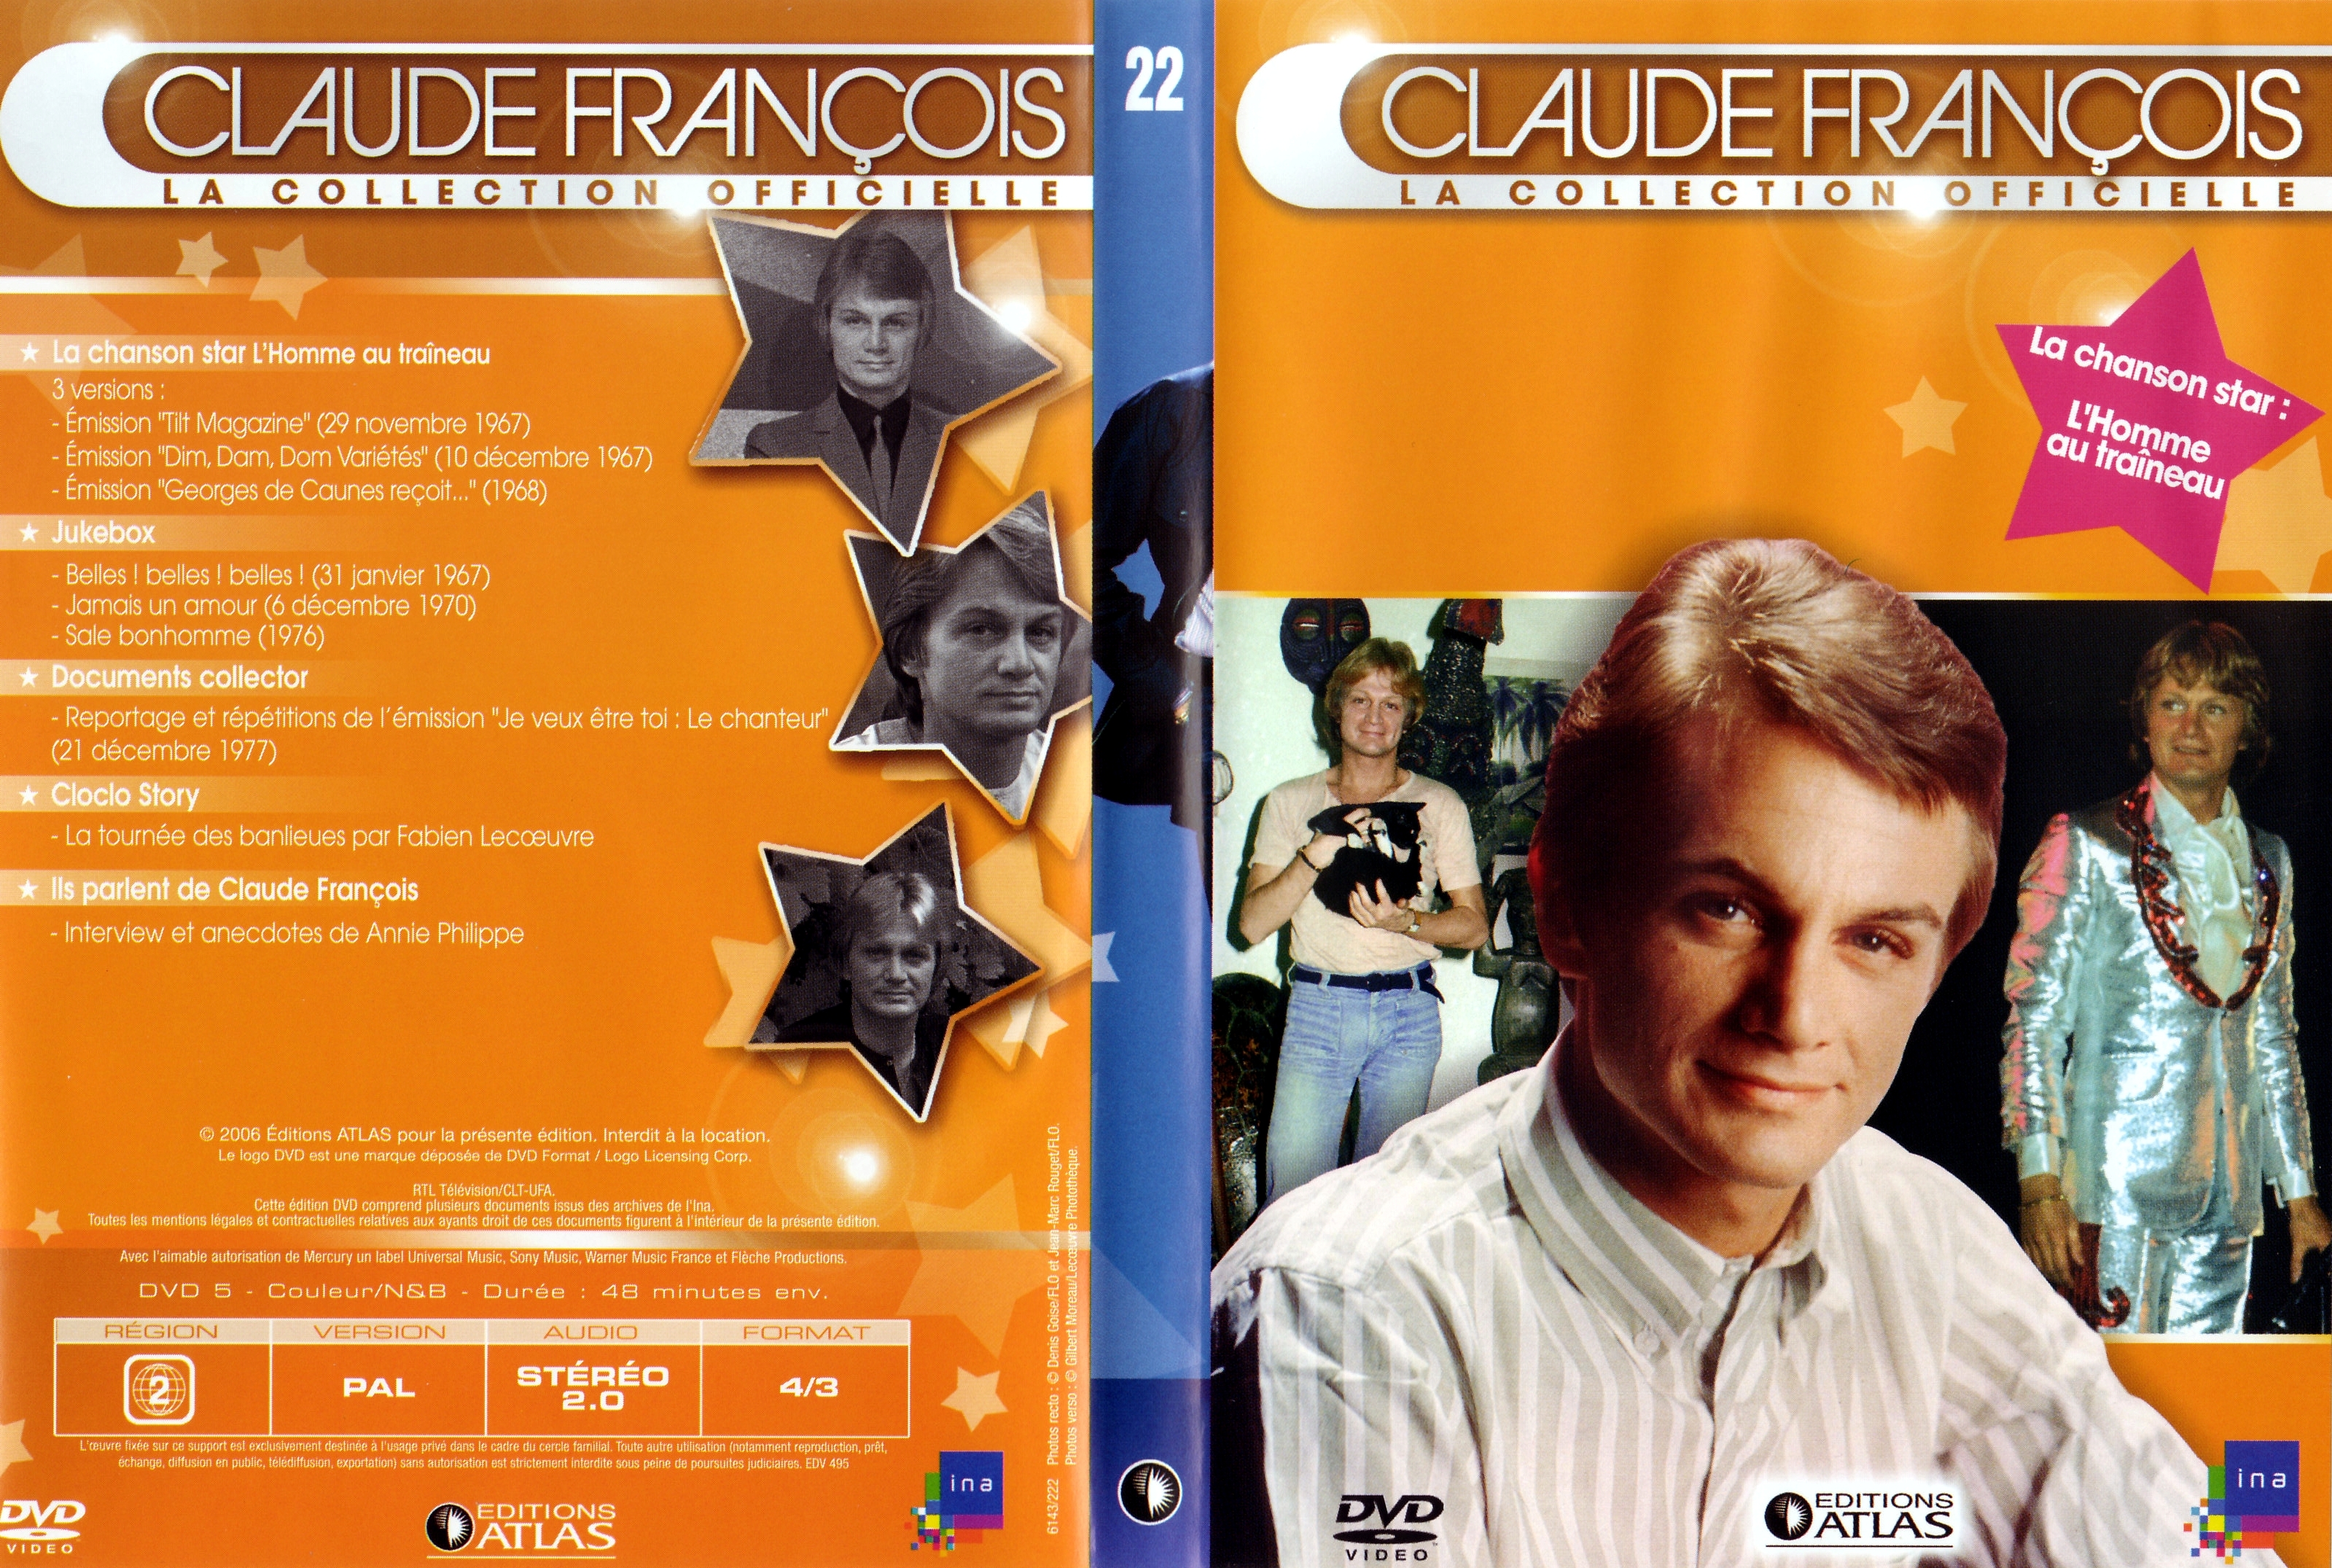 Jaquette DVD Claude Francois la collection officielle vol 22